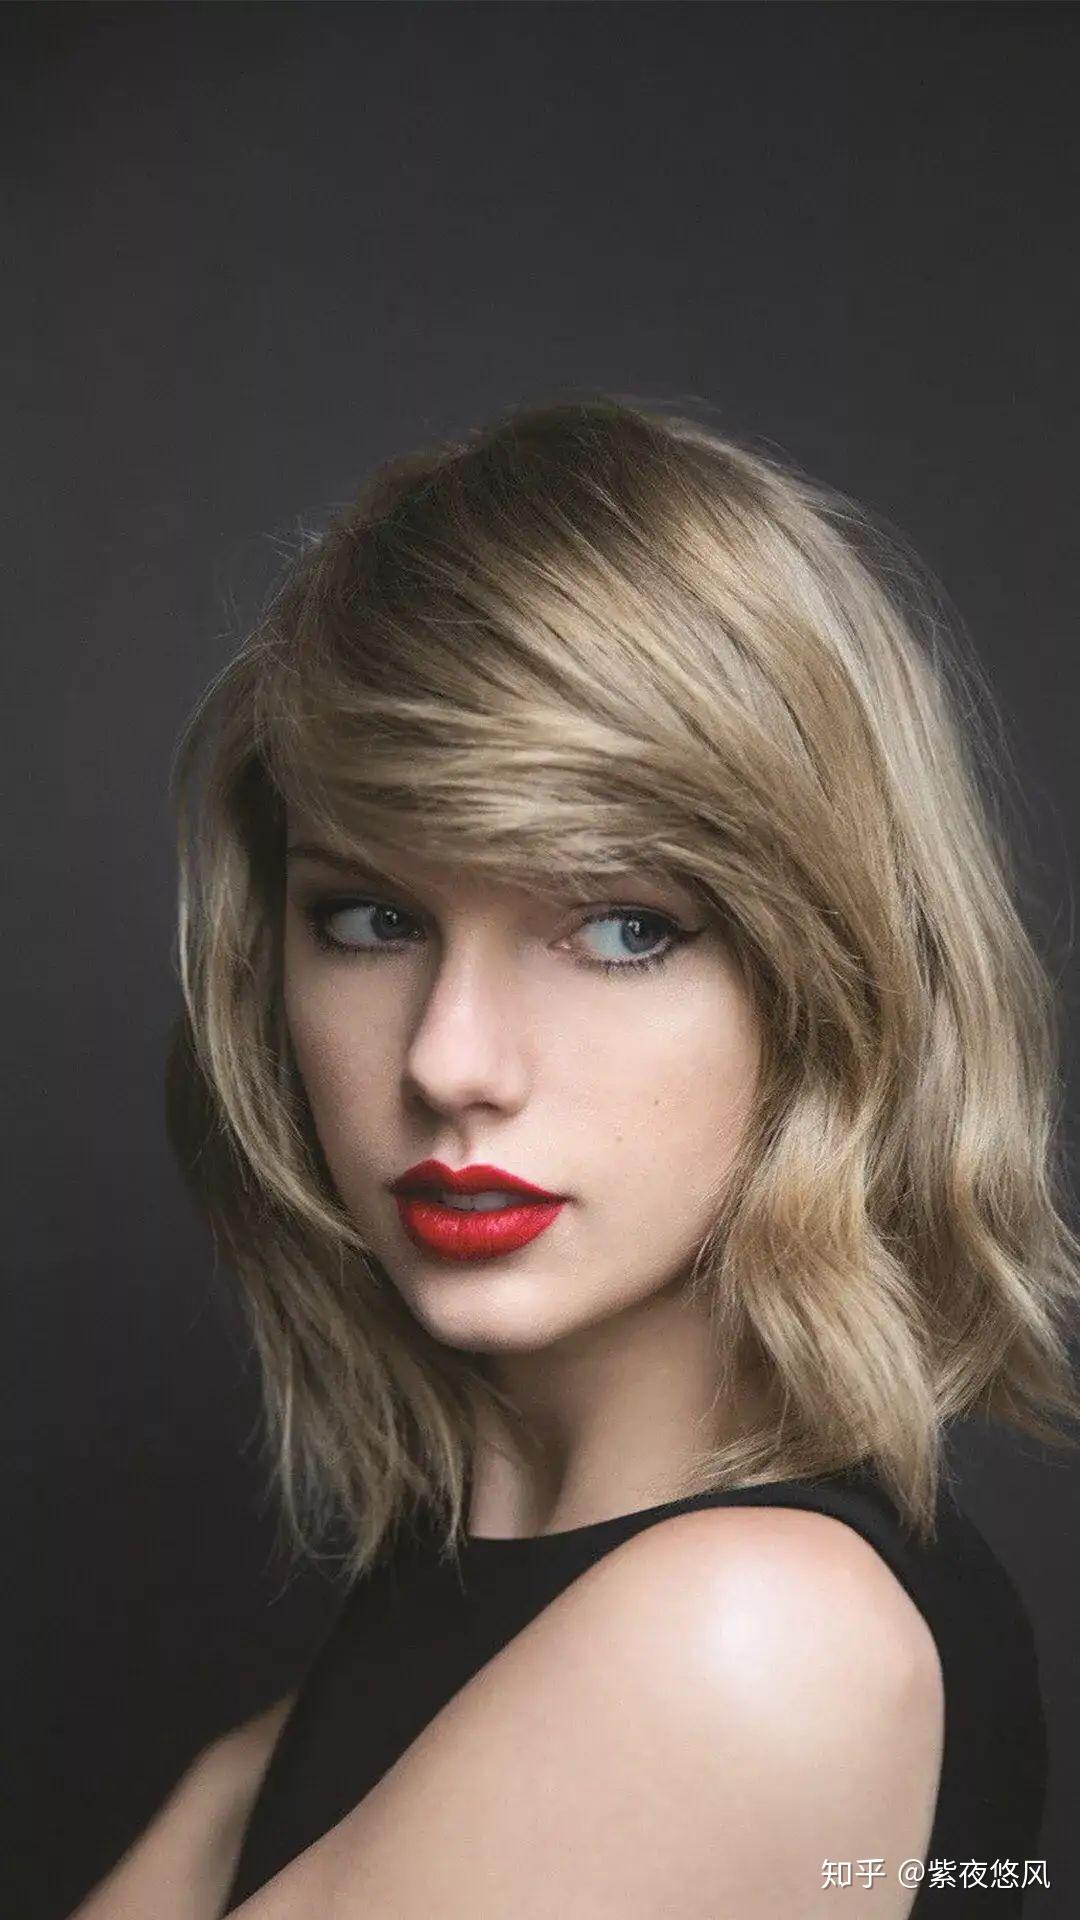 泰勒·斯威夫特 Taylor Swift 第九张专辑首单《willow》官方MV 新专《evermore》同步释出_哔哩哔哩 (゜-゜)つロ 干杯~-bilibili